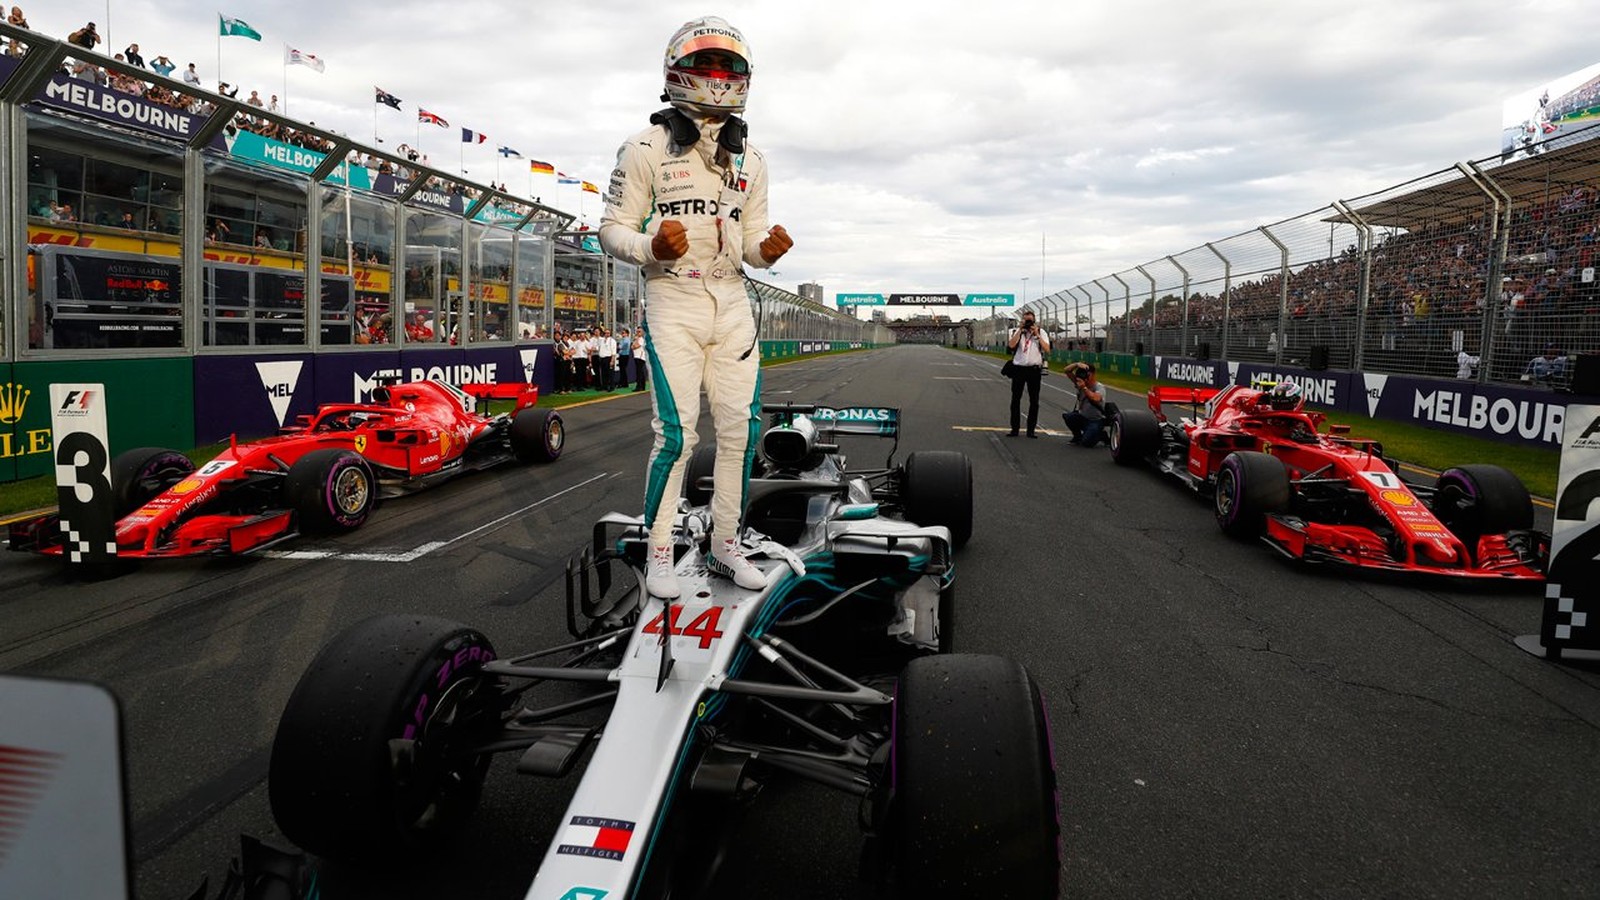 Hamilton deslancha no fim e conquista a pole position com recorde na Austrália